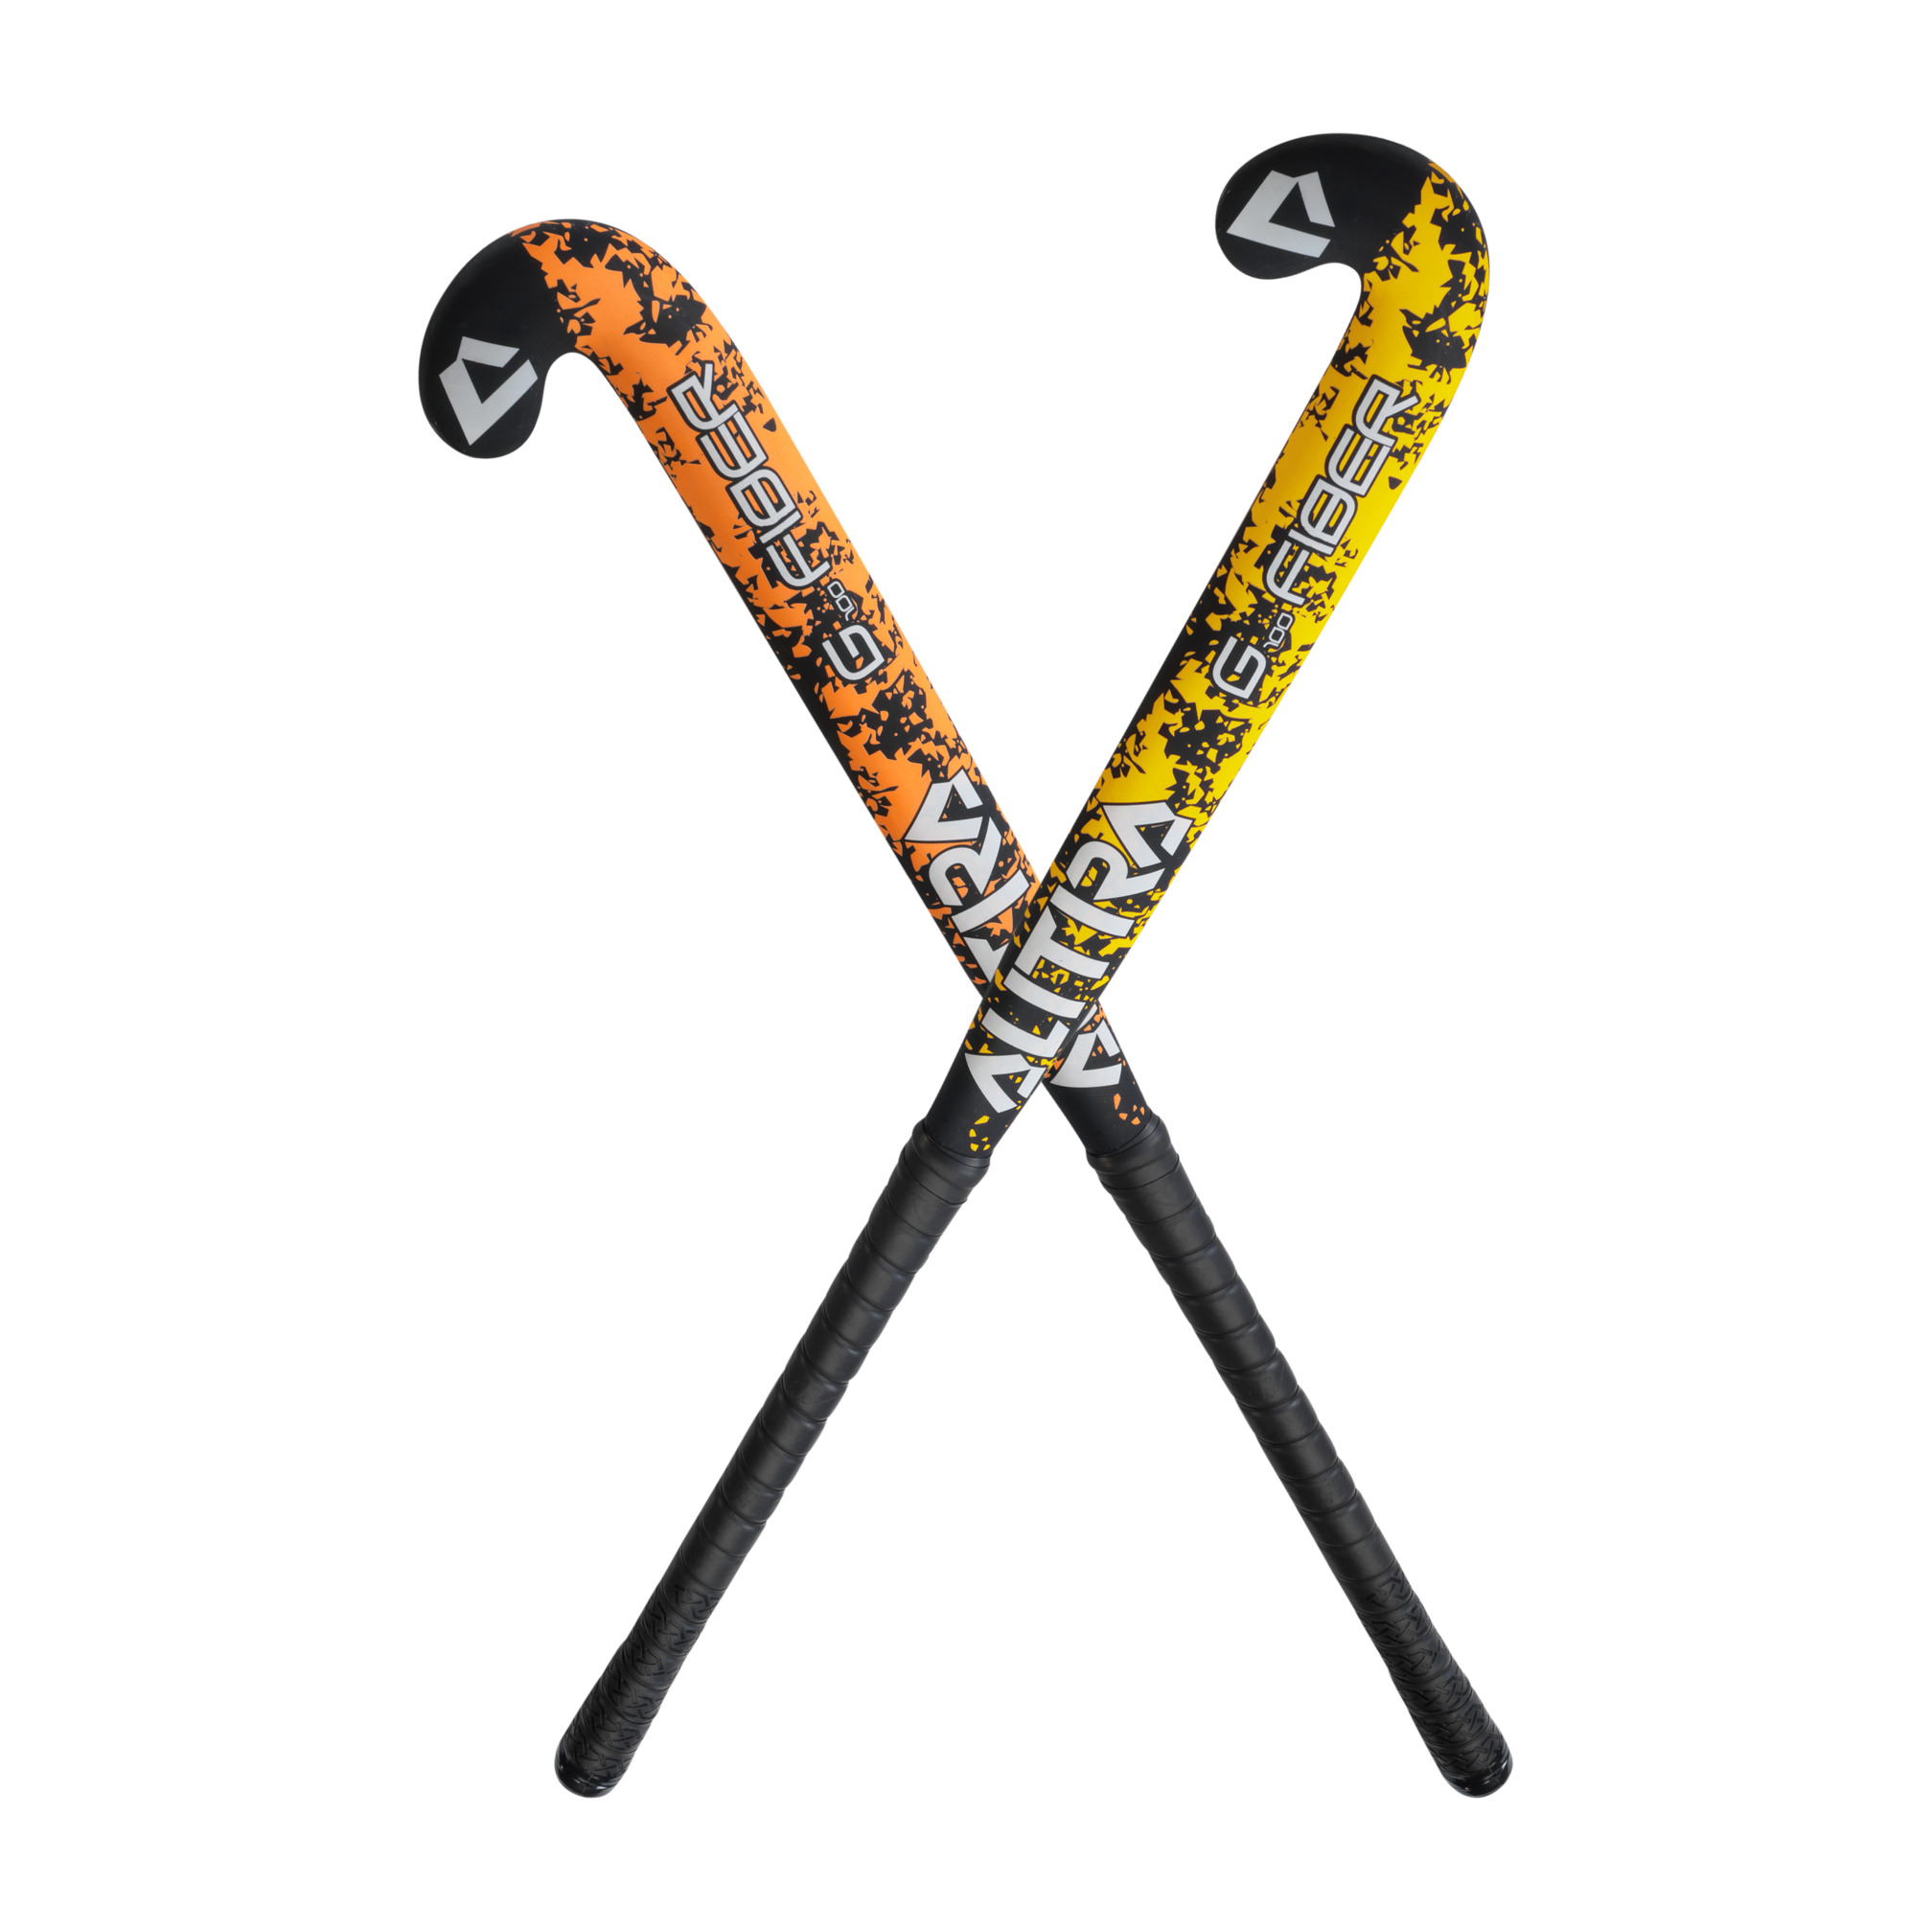 Outdoor Hockeyschläger, orange